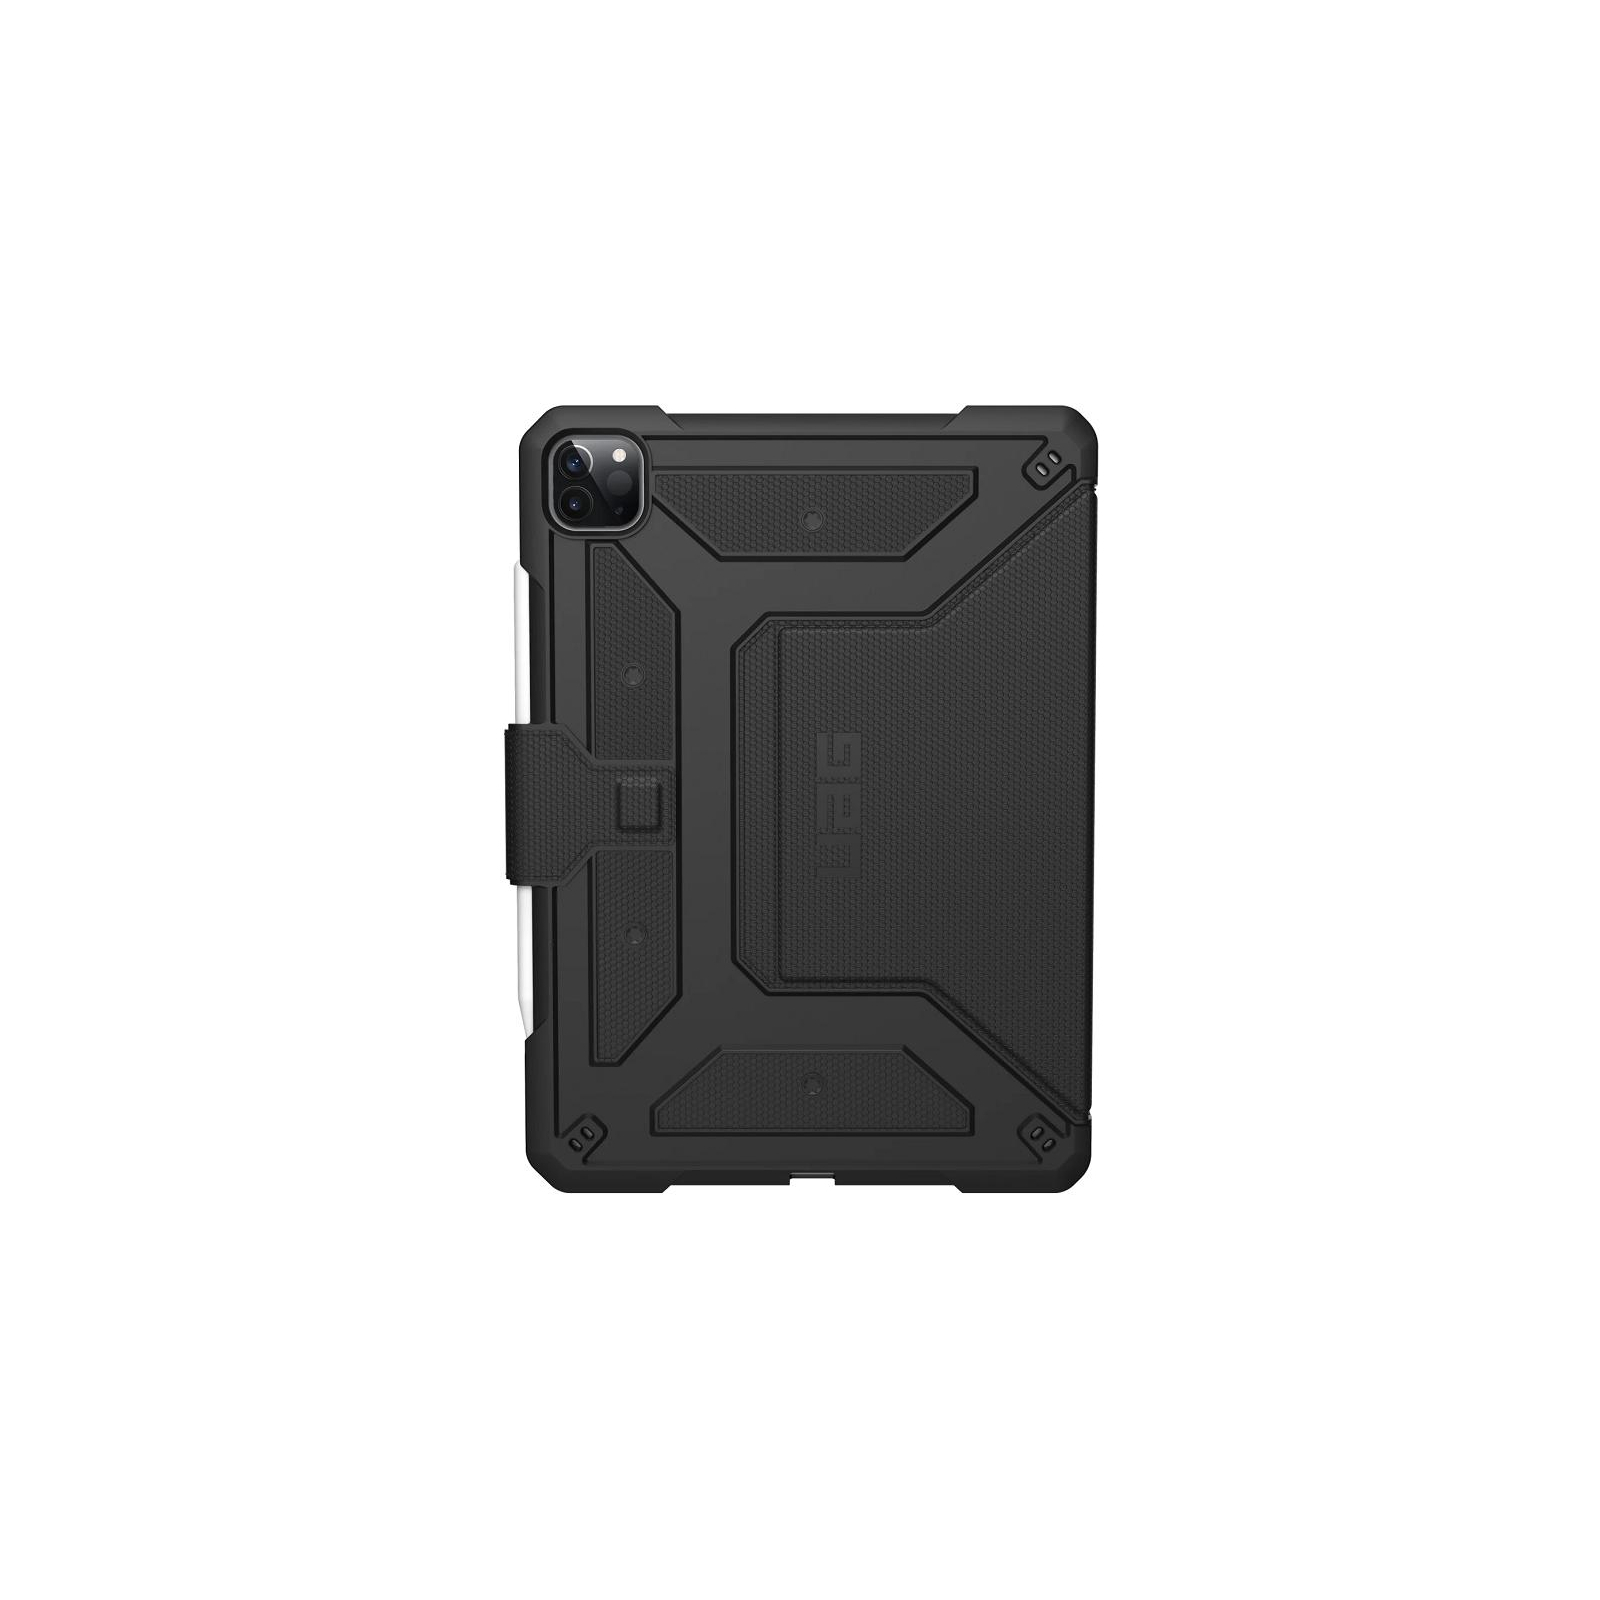 Чехол для планшета UAG iPad Pro 11 (2020) Metropolis, Black (122076114040) изображение 2